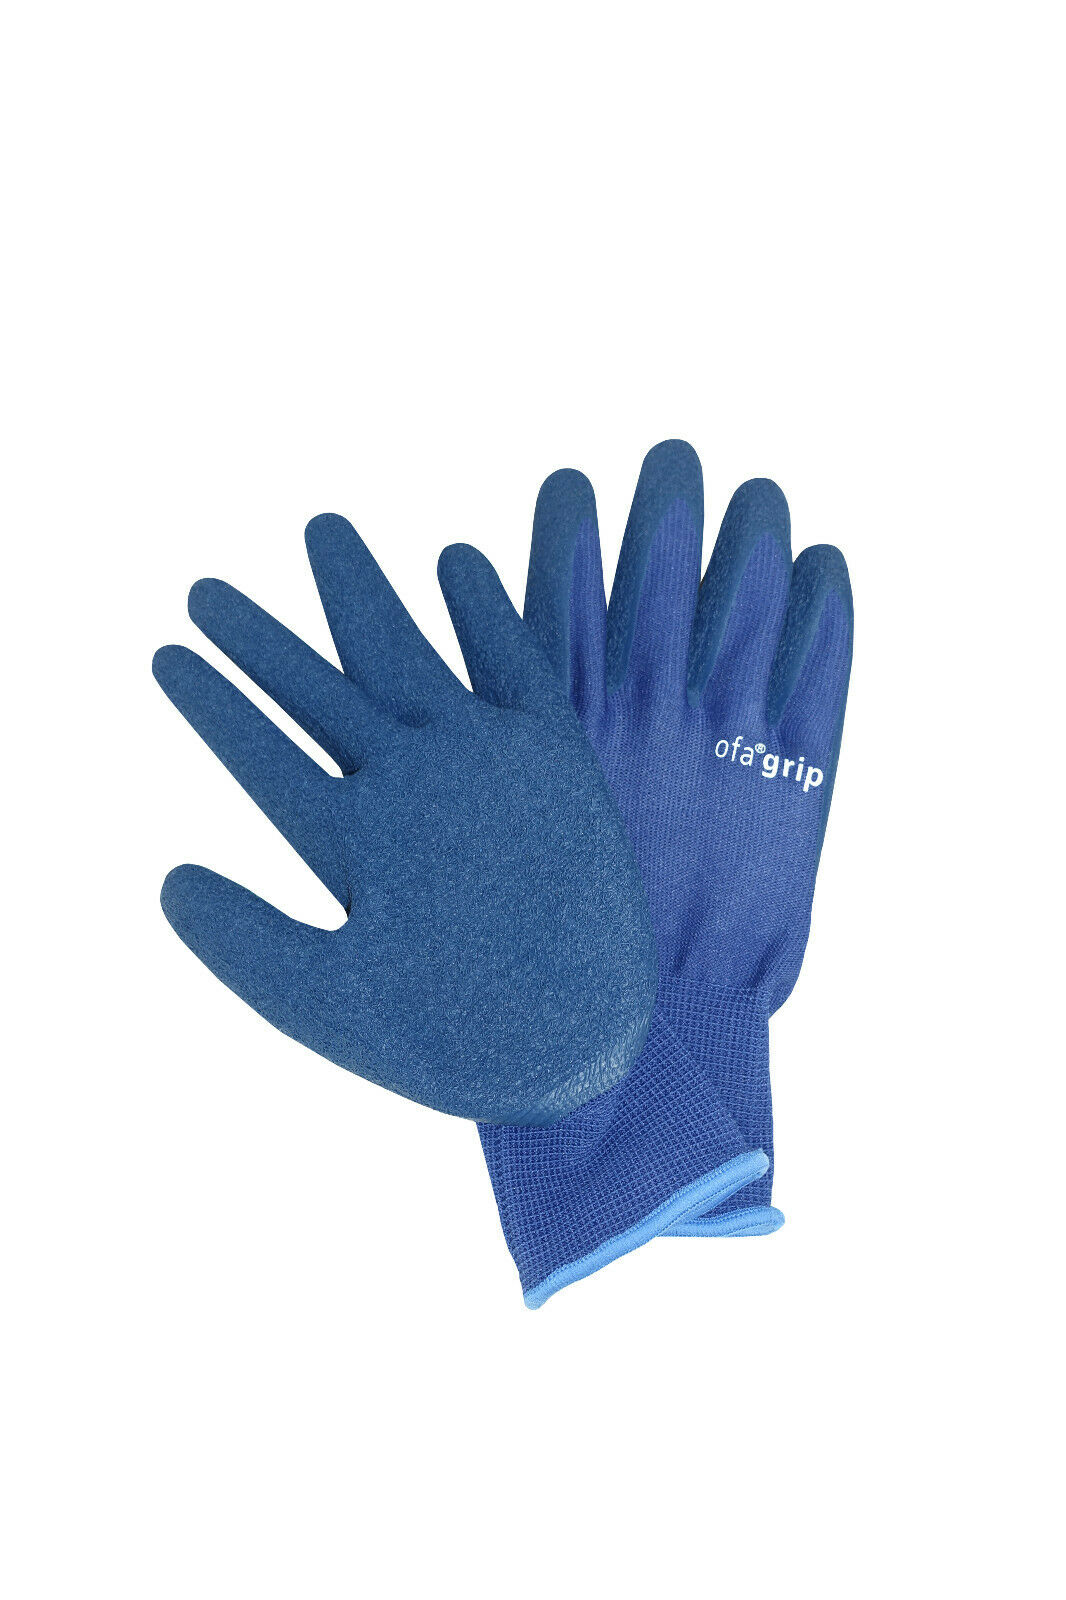 Ofa Grip Handschuhe Zum Anziehen Von Kompressionsstrümpfen Anziehhilfe